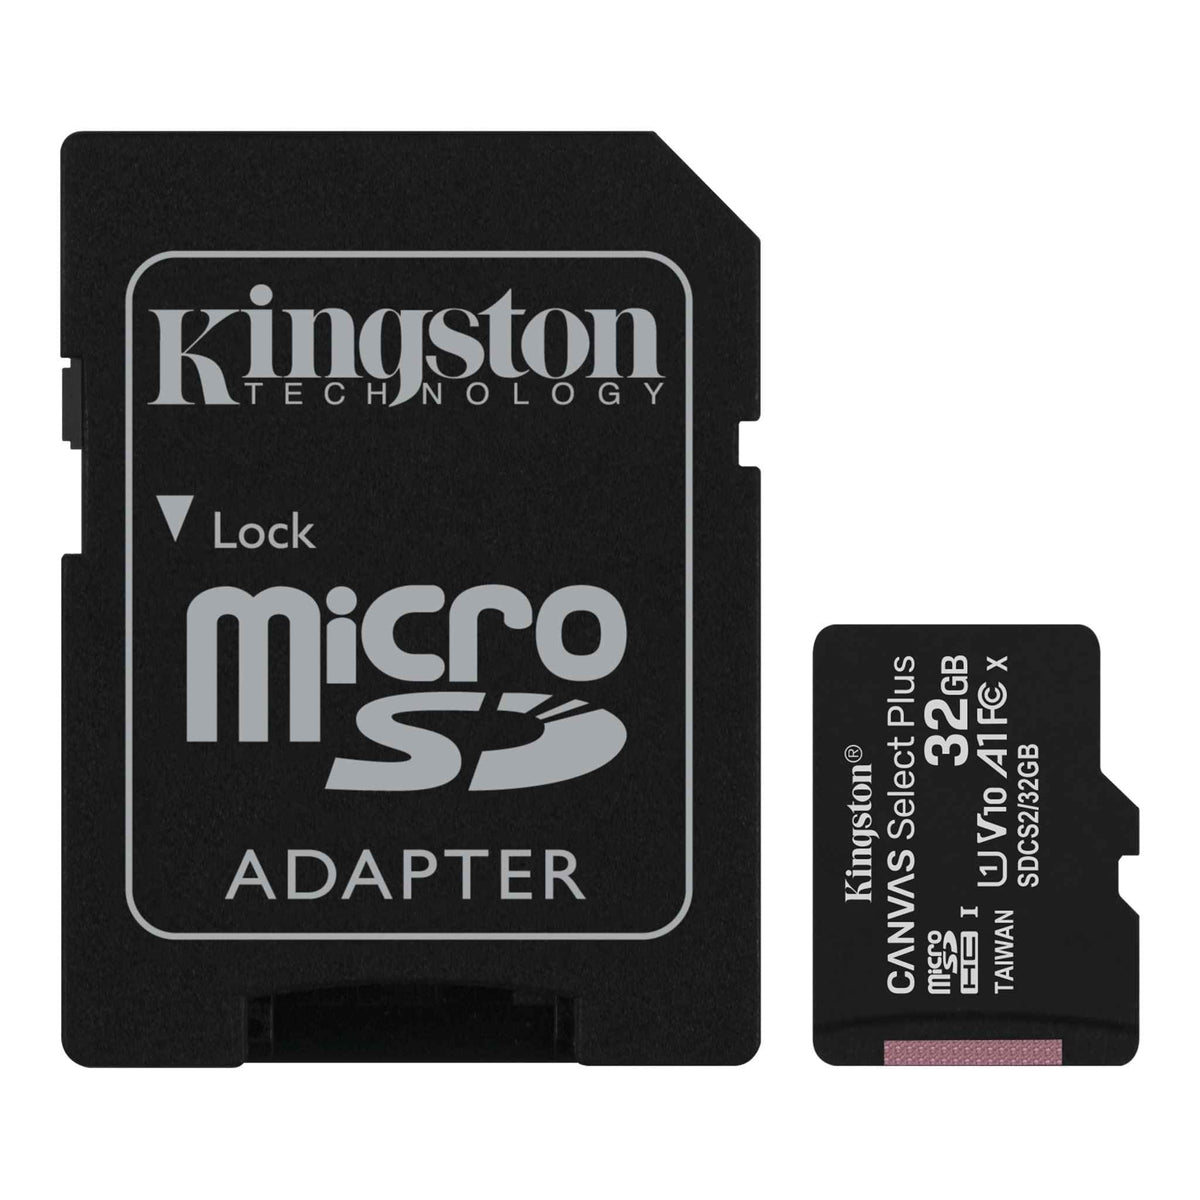 Kingston Standard Kingston Technology microSD hukommelseskort klasse 10 32GB SDCS2/32GB